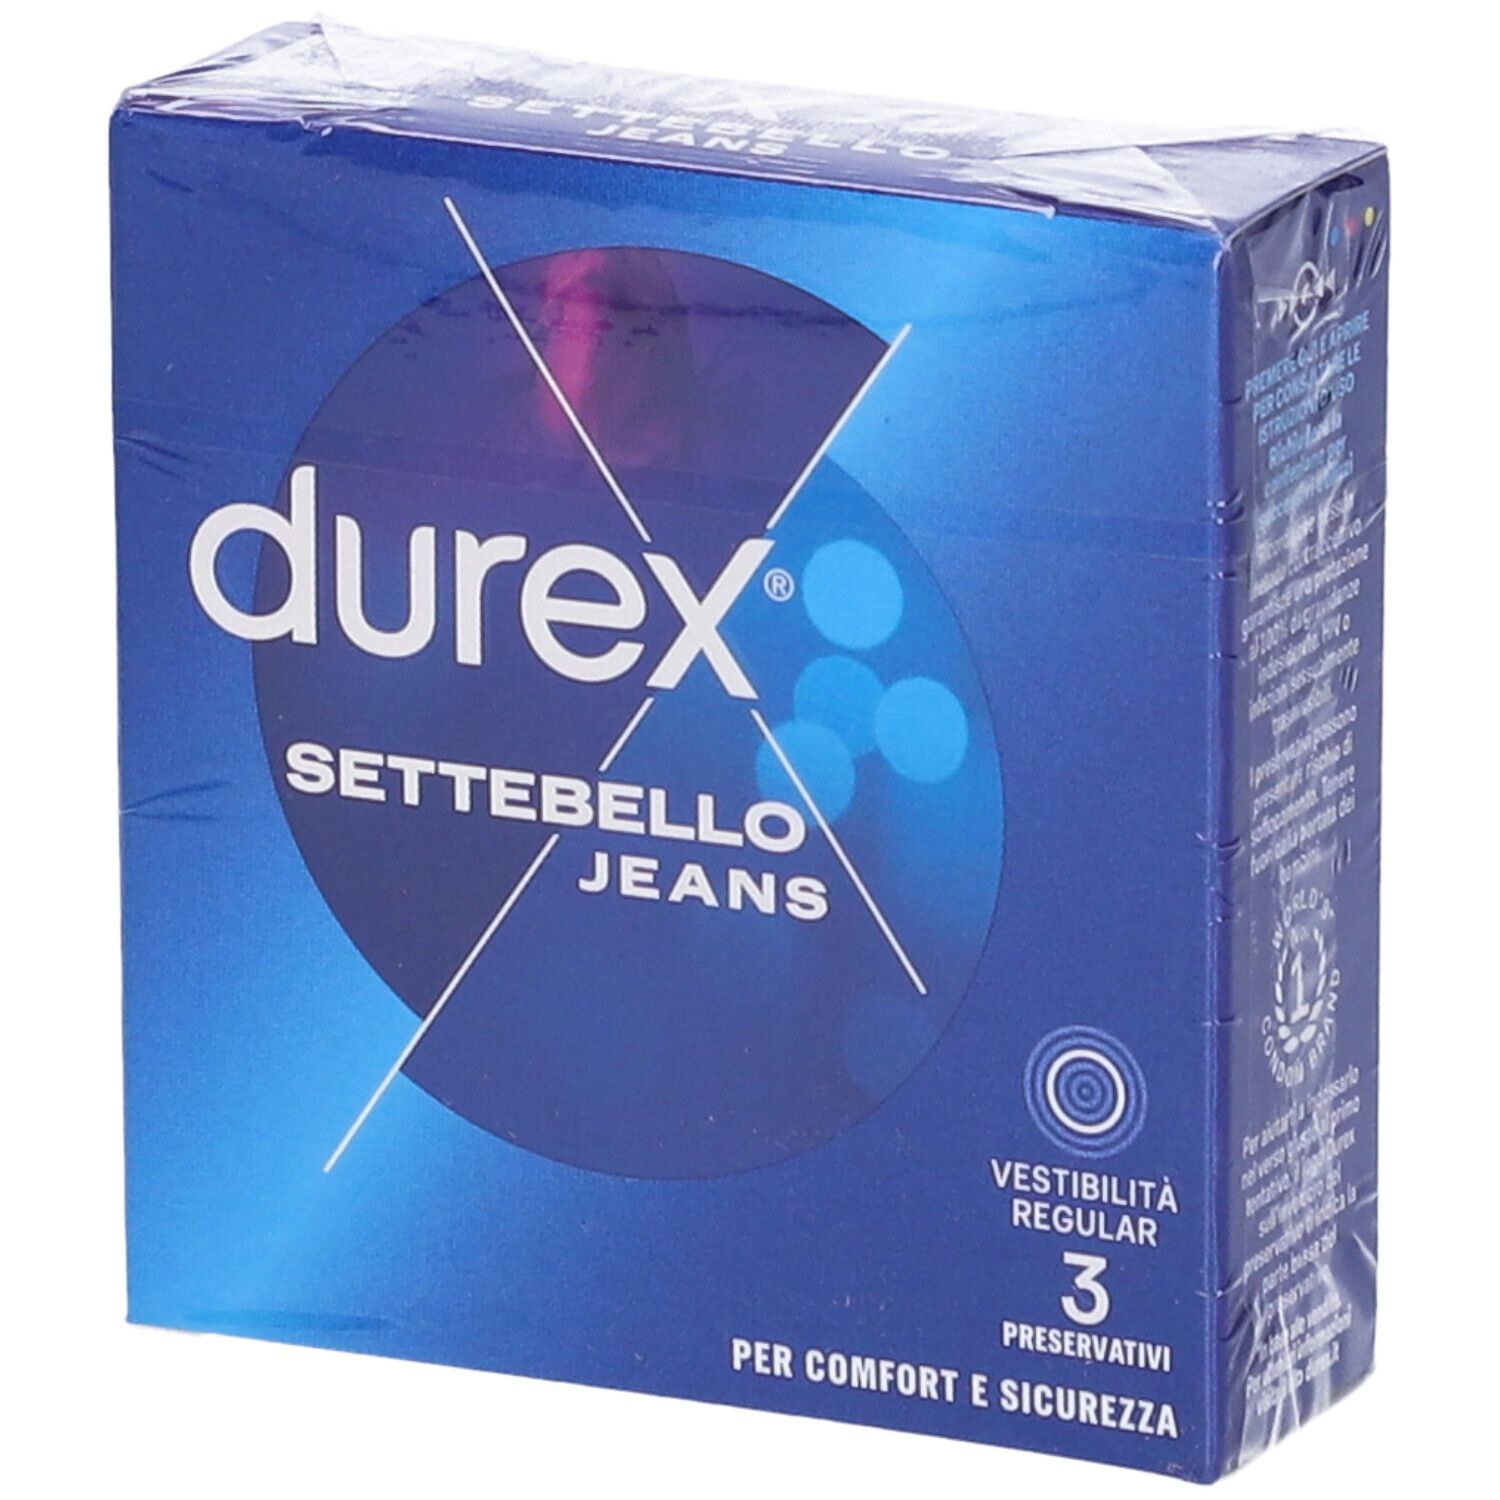 Durex Settebello Jeans